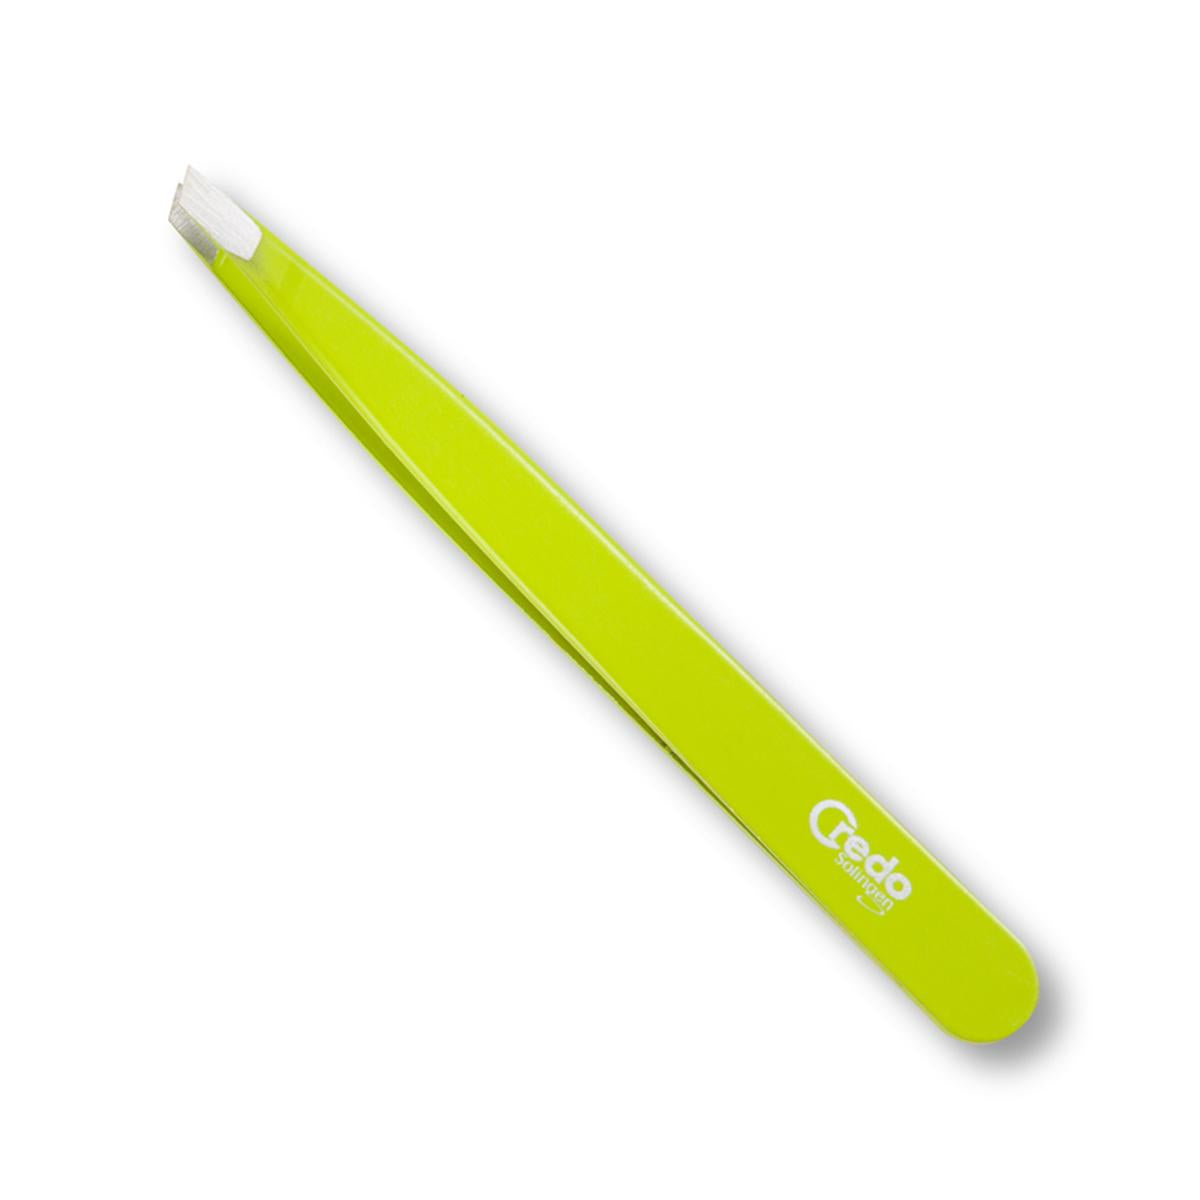 Primary image of Green Pop Art Slanted Tweezer